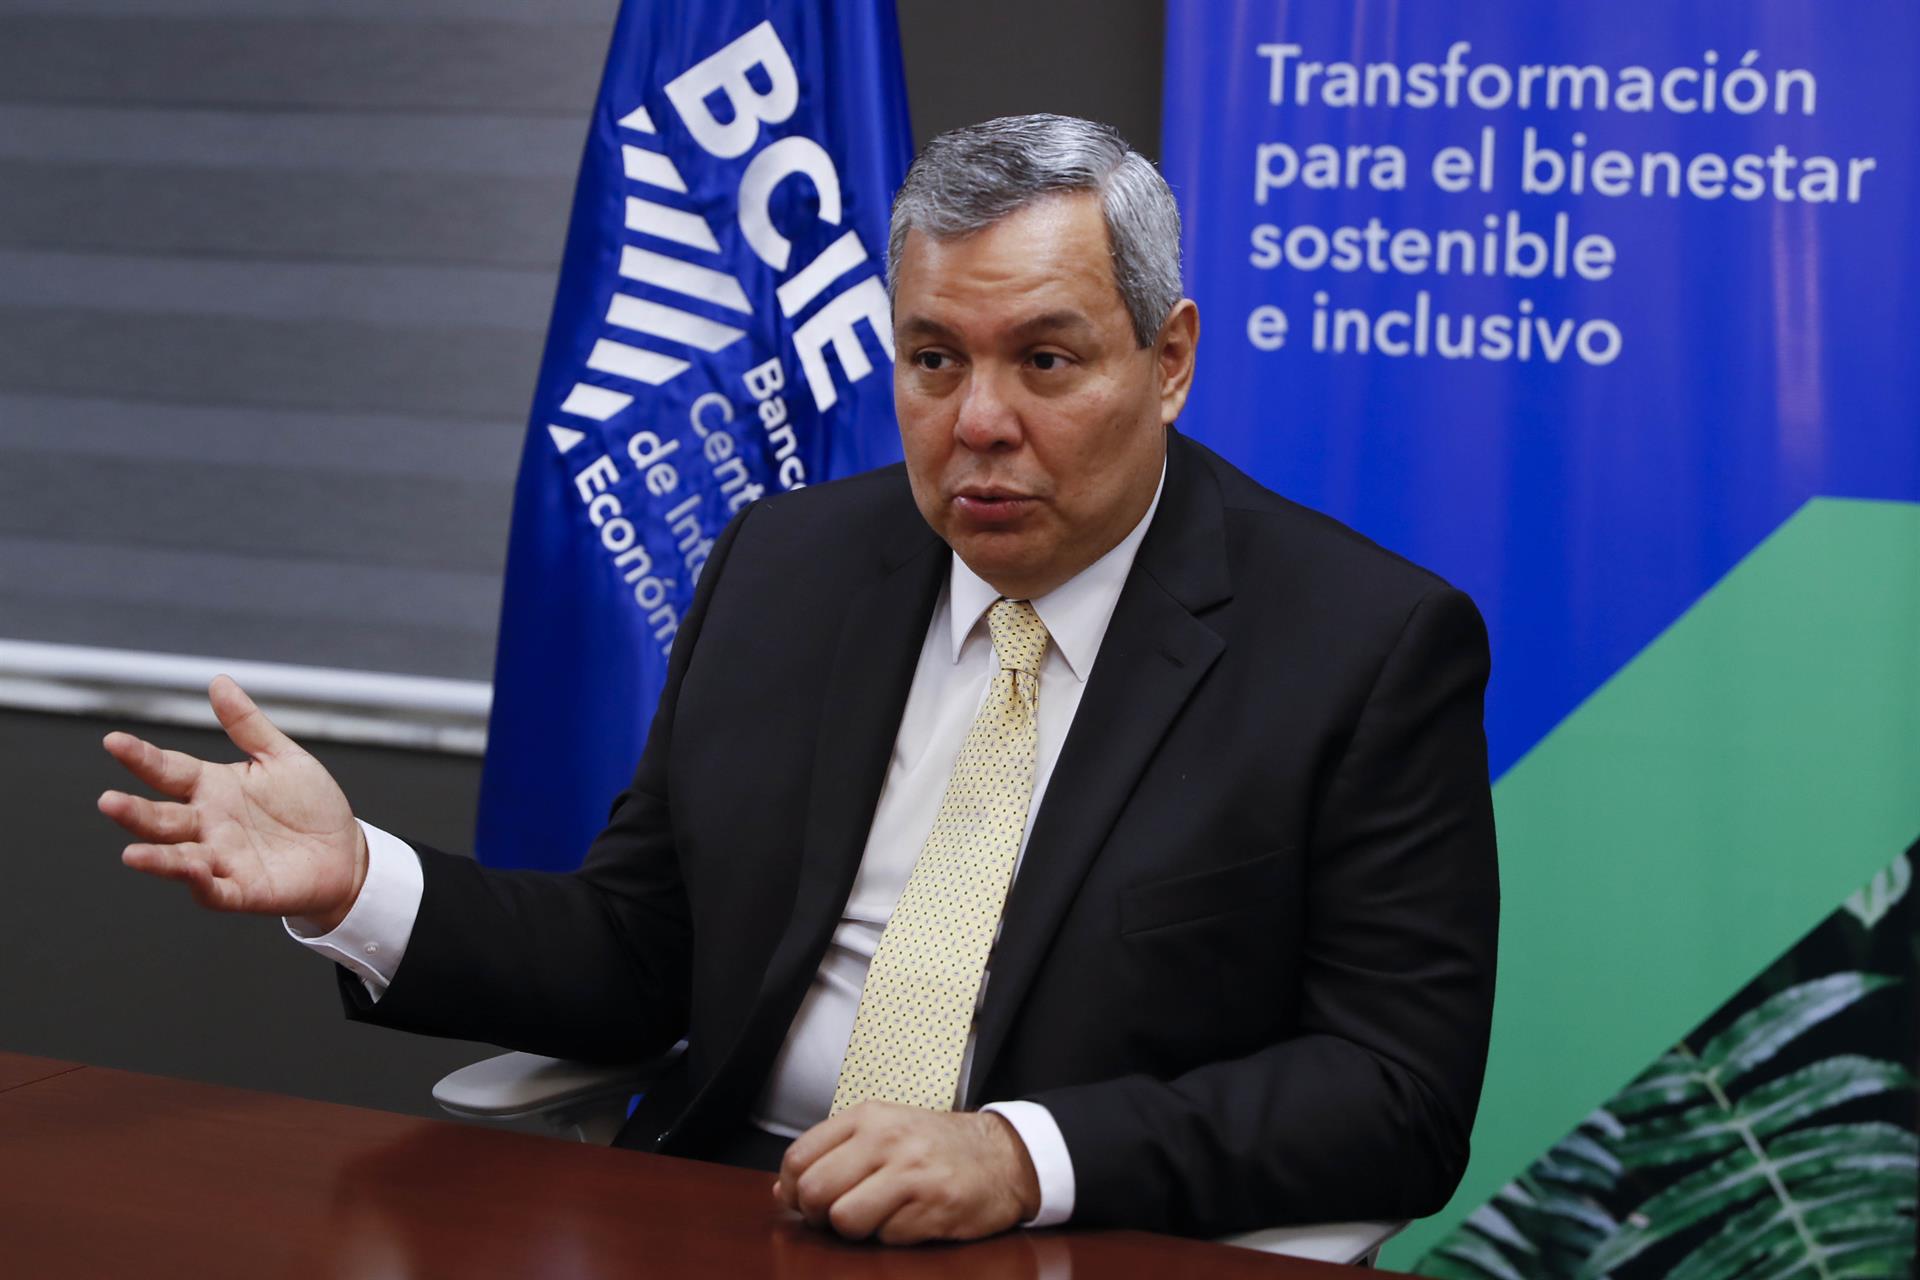 El BCIE acude a EE.UU. para acelerar movilidad eléctrica en Centroamérica